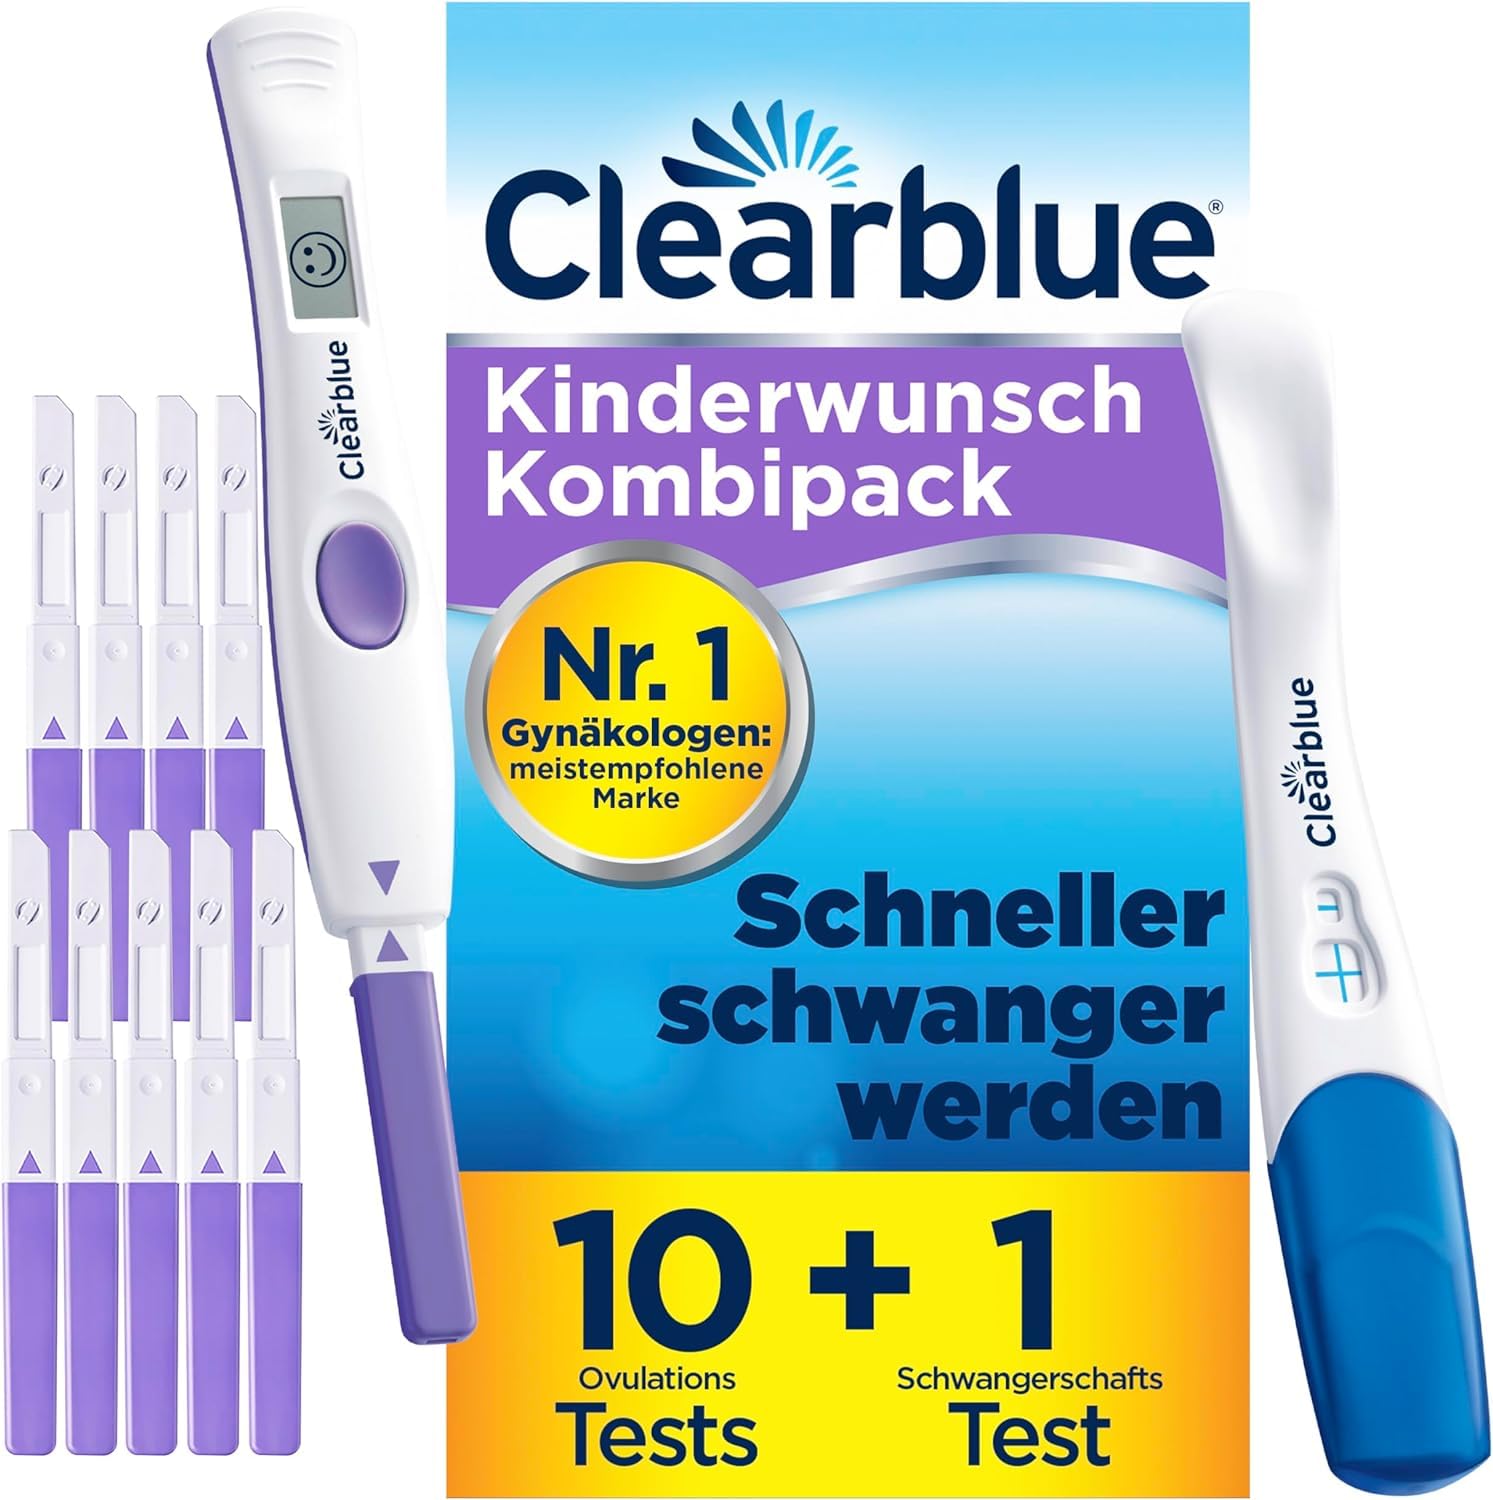 Clearblue Kinderwunsch Kombipack Fortschrittlich & Digital, 10 Ovulationstests + 1 digitale Testhalterung + 1 Schwangerschaftstest Schnelle Erkennung, Fruchtbarkeitstest für Frauen / Eisprung